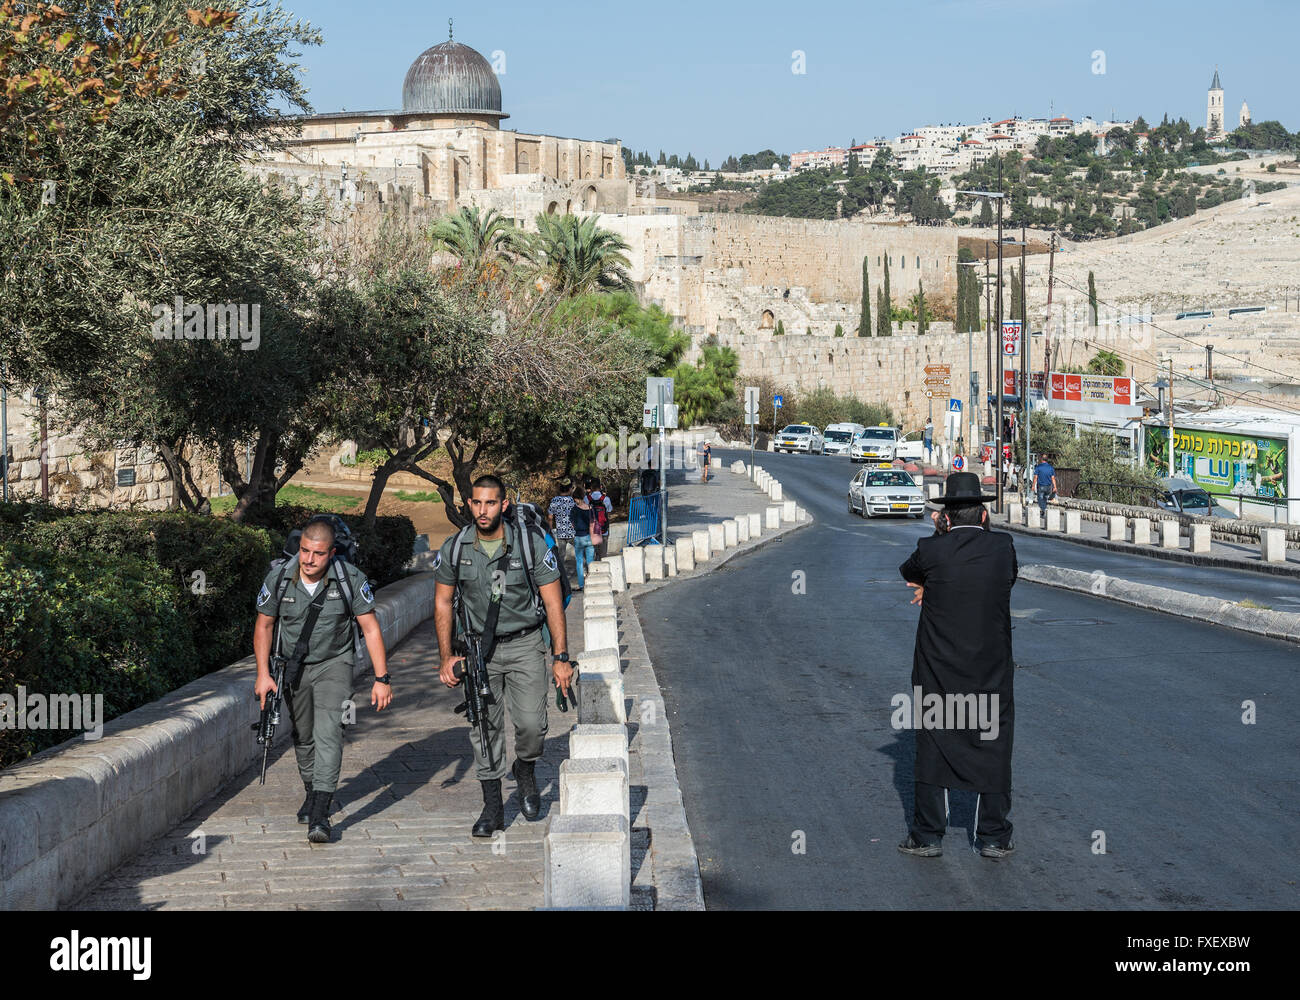 Ebreo ortodosso e frontiera israeliana pattuglia di polizia su Ma'ale HaShalom street a Gerusalemme, Israele. La Moschea di Al-Aqsa sullo sfondo Foto Stock